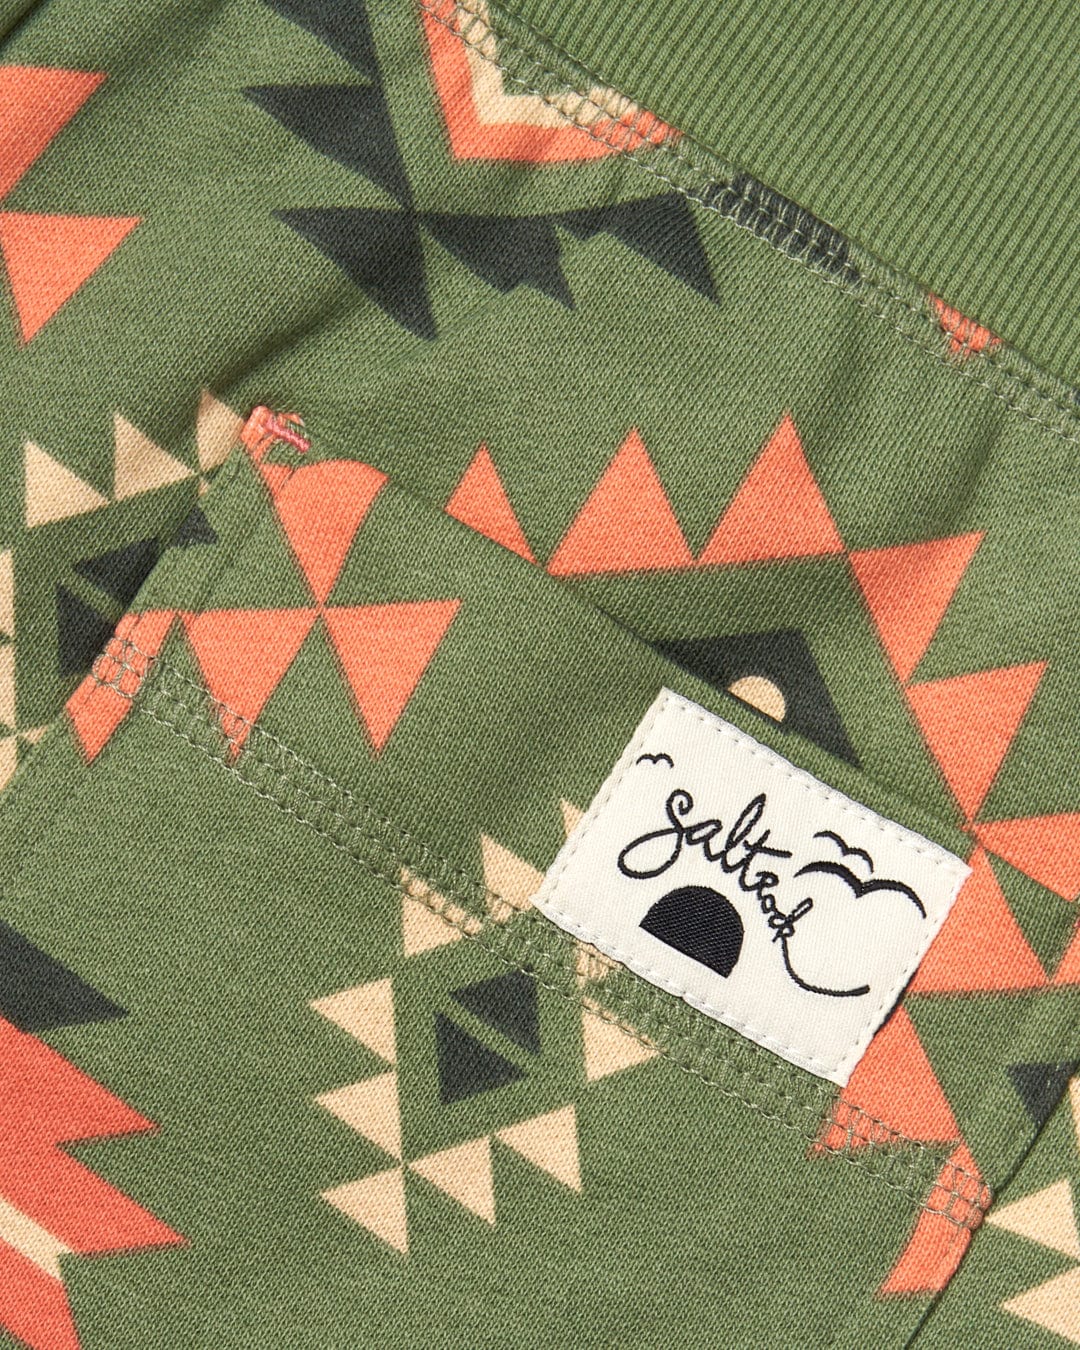 A pocket with an Aztec Santano - Womens Sweatshorts - Green/Orange print pattern on it by Saltrock.